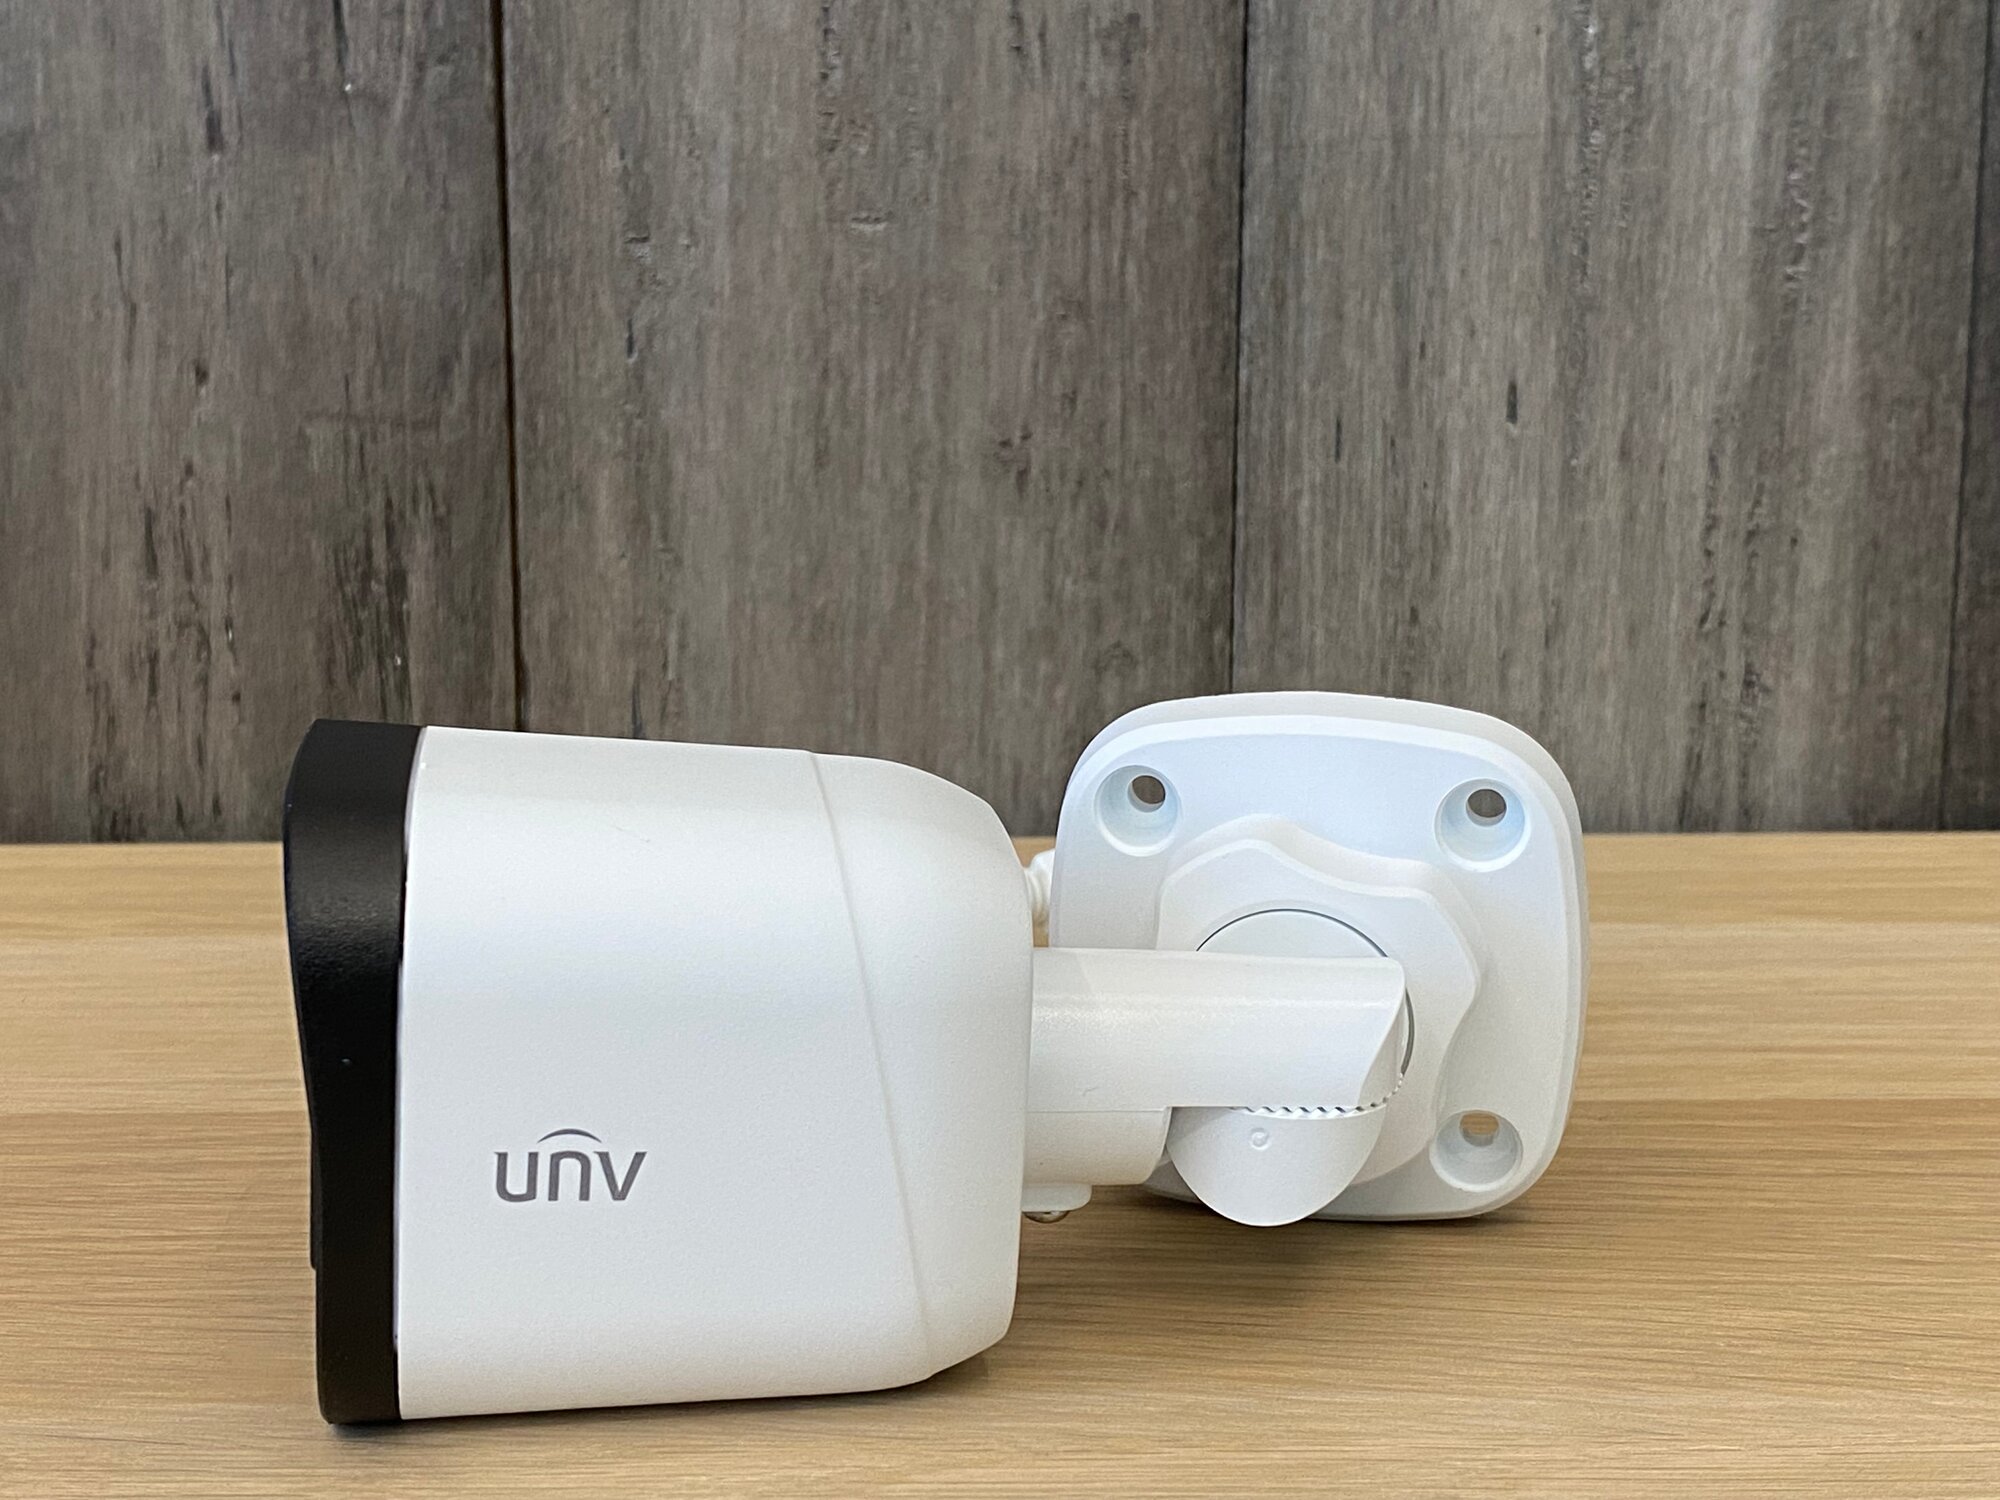 Аналоговая камера Uniarch 2МП (AHD/CVI/TVI/CVBS) уличная цилиндрическая с фиксированным объективом 2.8 мм, ИК подсветка до 20 м., матрица 1/3" CMOS. UNV - фото №6